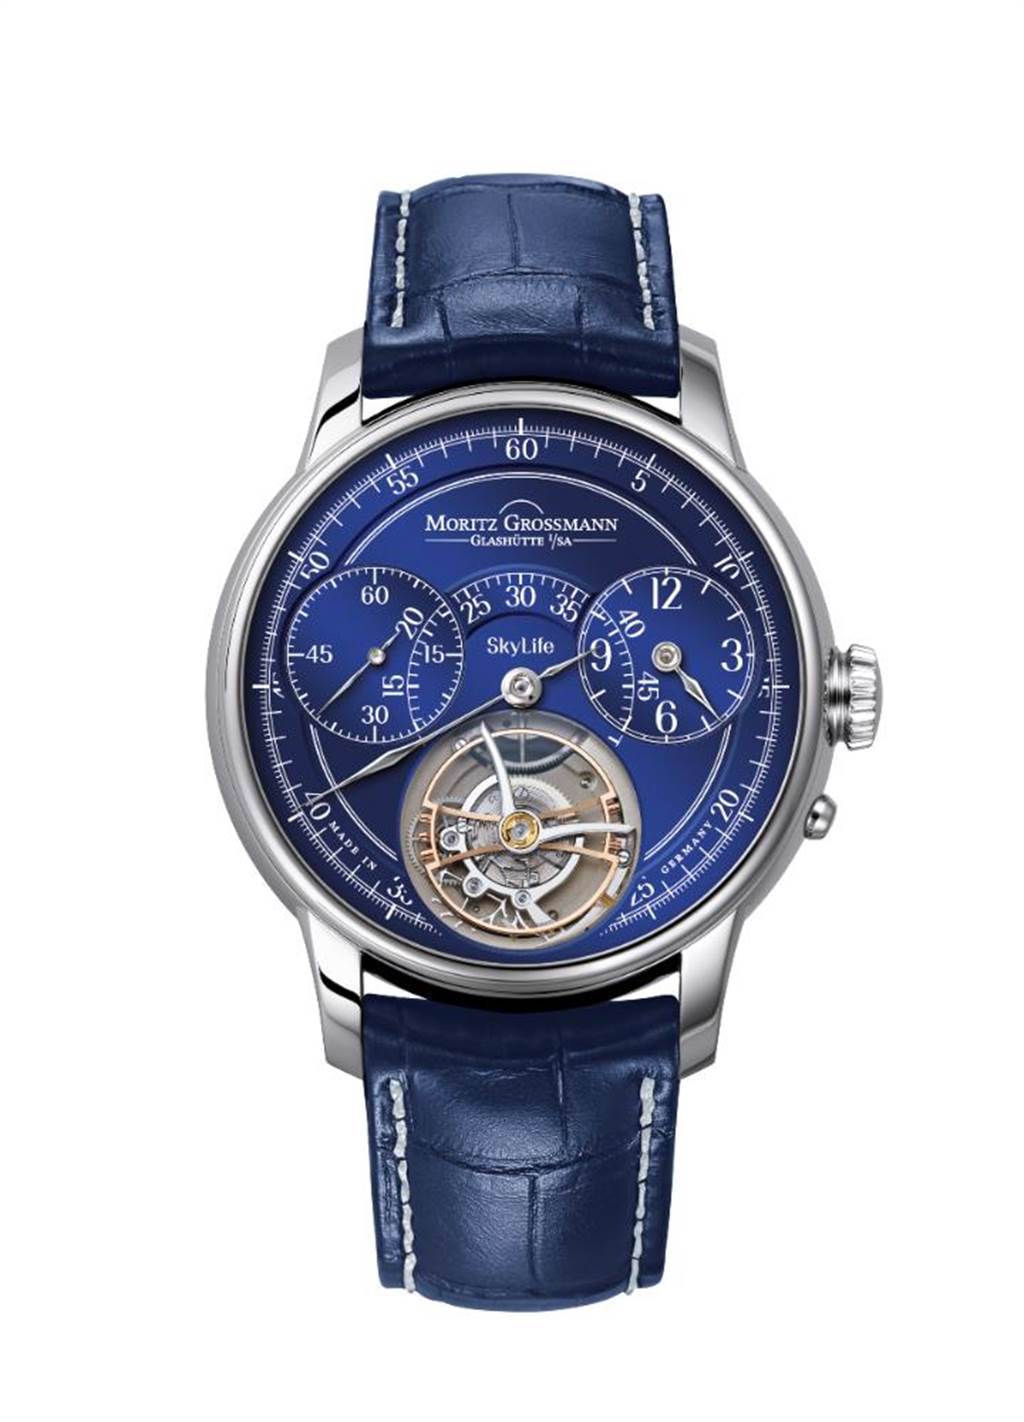 圖二：德國獨立製表Moritz Grossmann的Benu Heritage Skylife Tourbillon飛行陀飛輪腕表，這只藍色表盤作品是以CEO的秀髮打造停秒裝置，也可接受客人提供頭髮訂製，608萬元。（瑞博品提供）